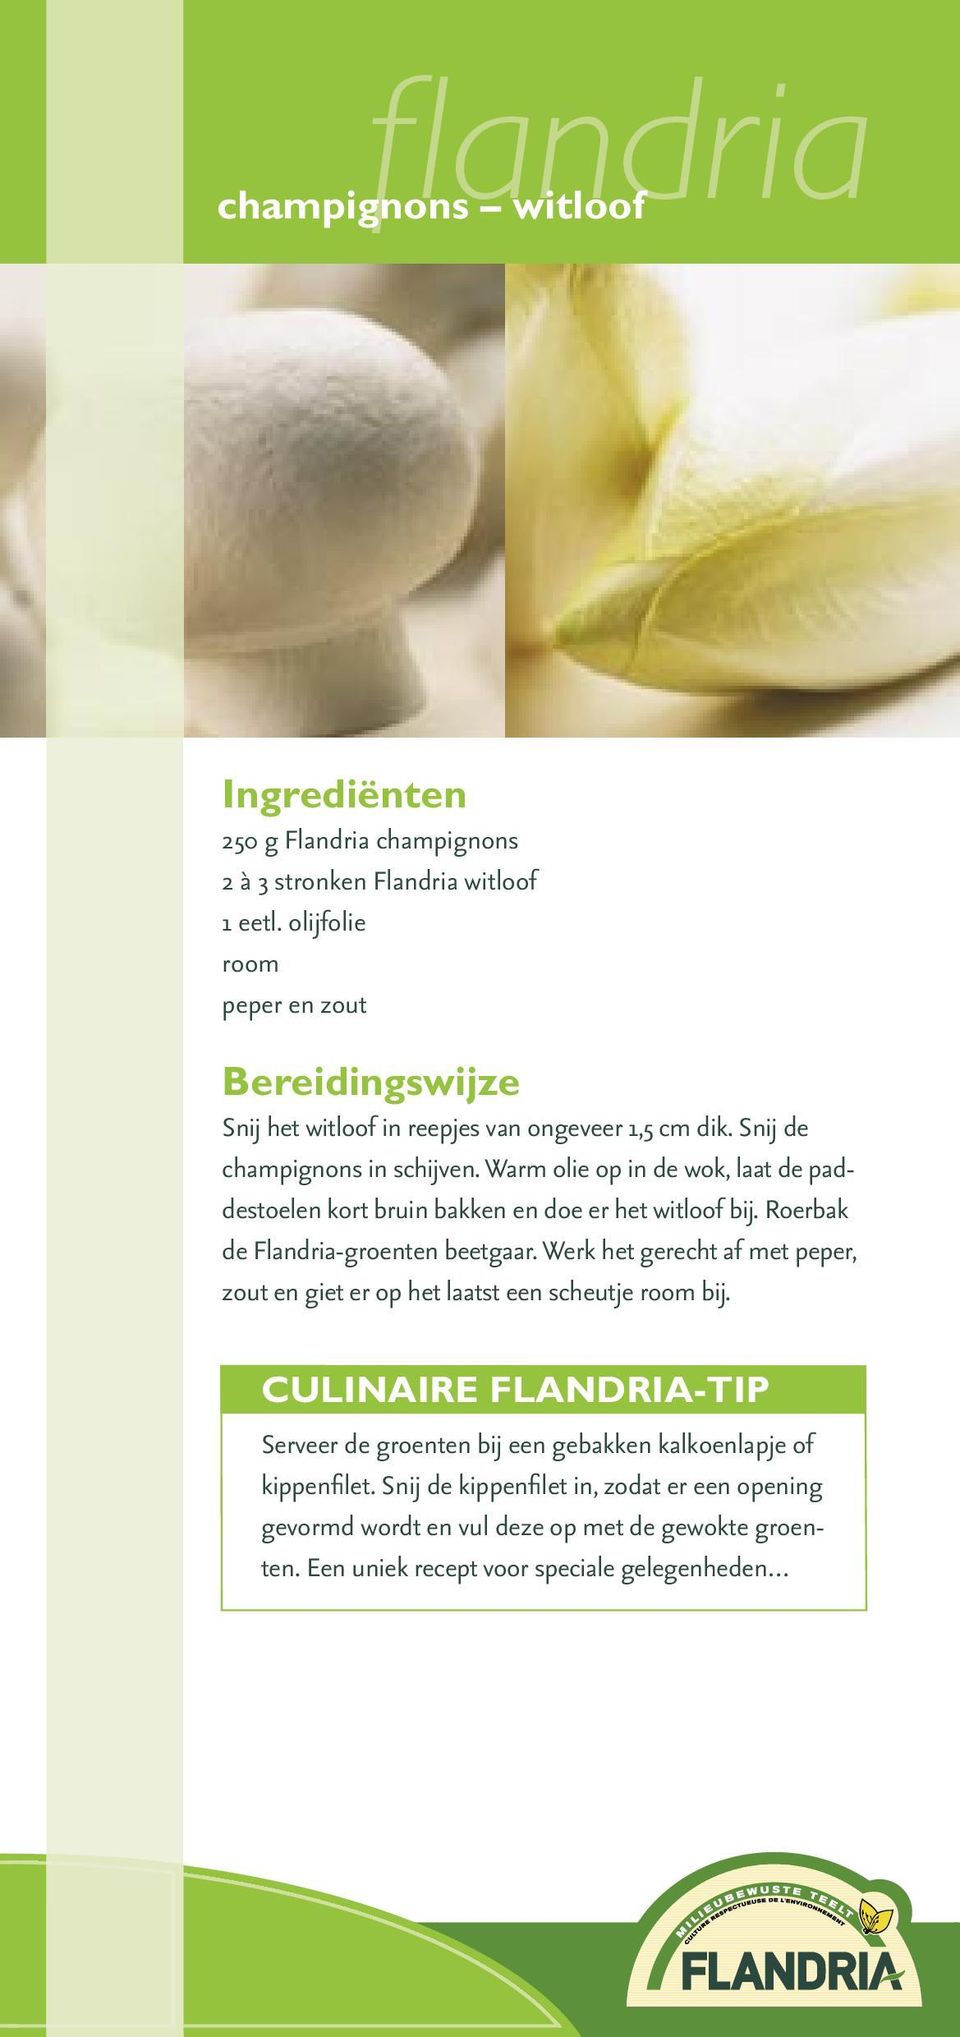 Roerbak de Flandria-groenten beetgaar. Werk het gerecht af met peper, zout en giet er op het laatst een scheutje room bij.